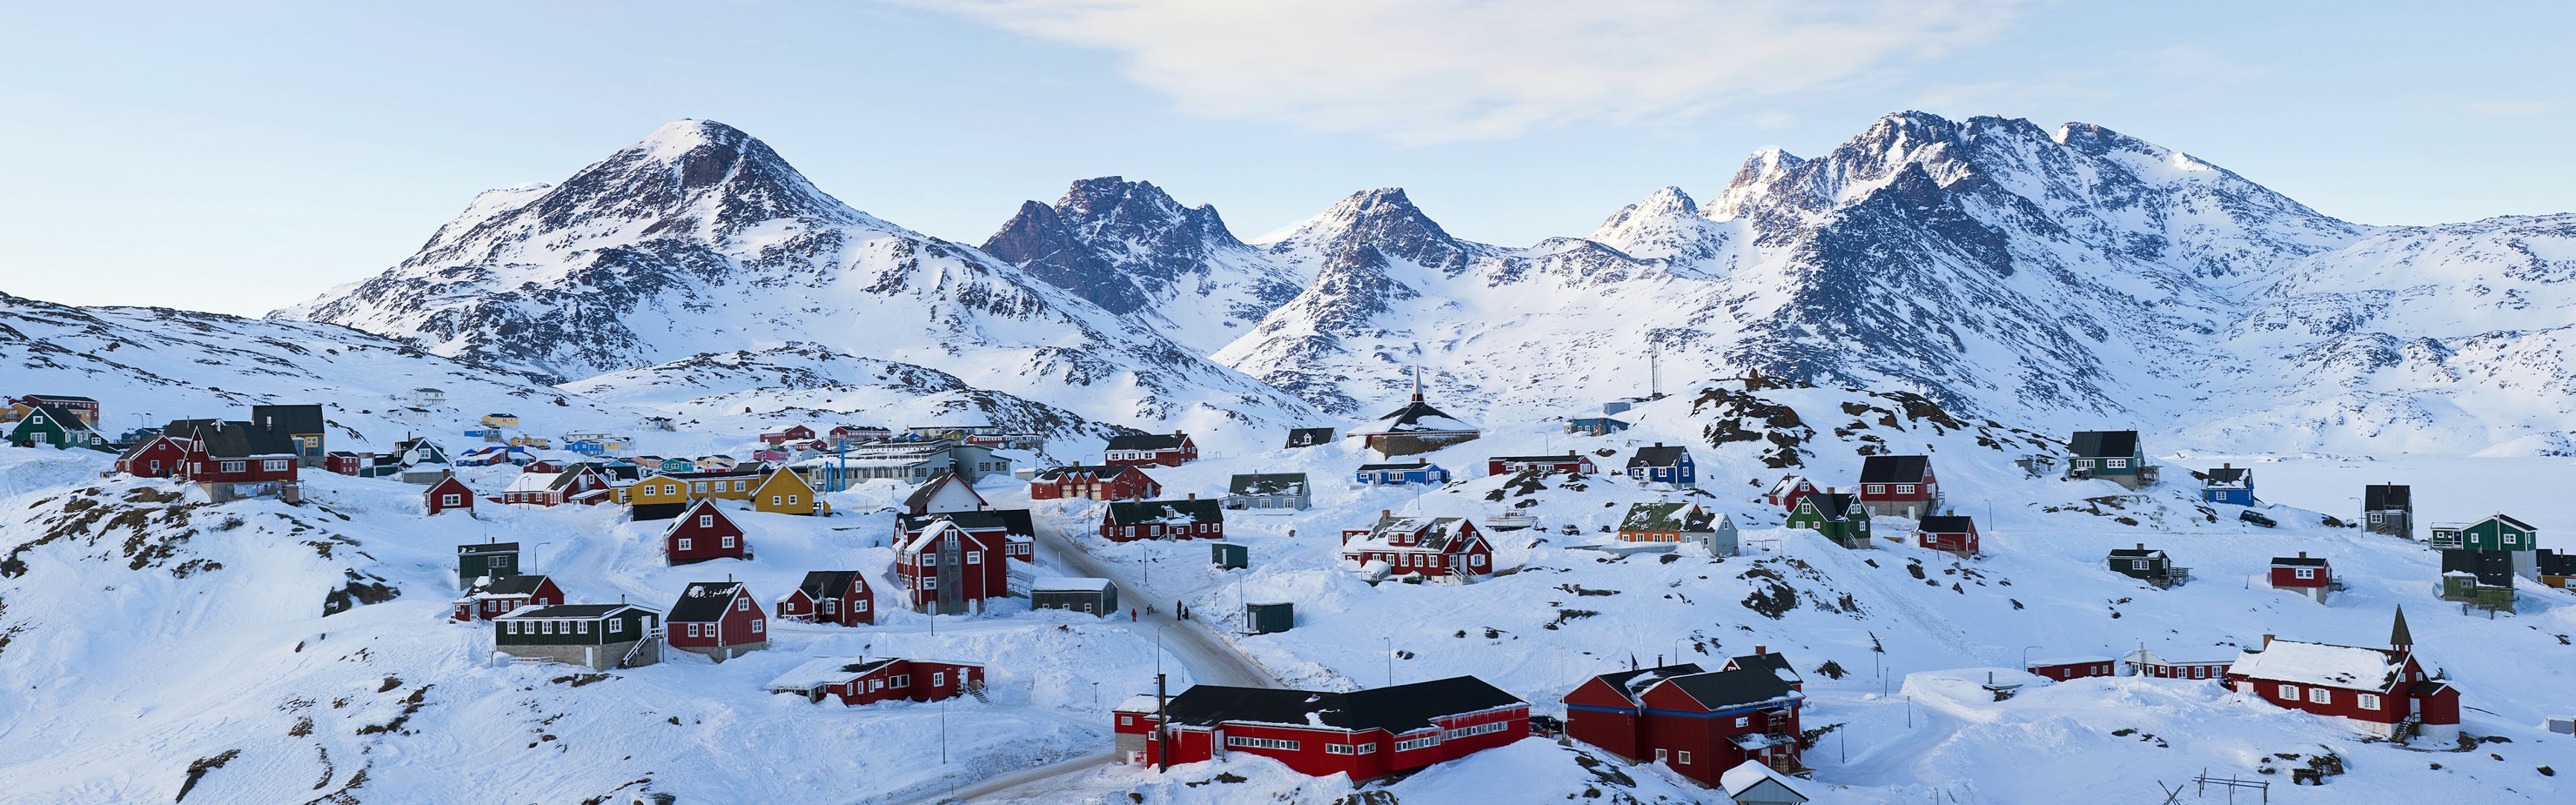 Greenland Village Snow 3456x1080